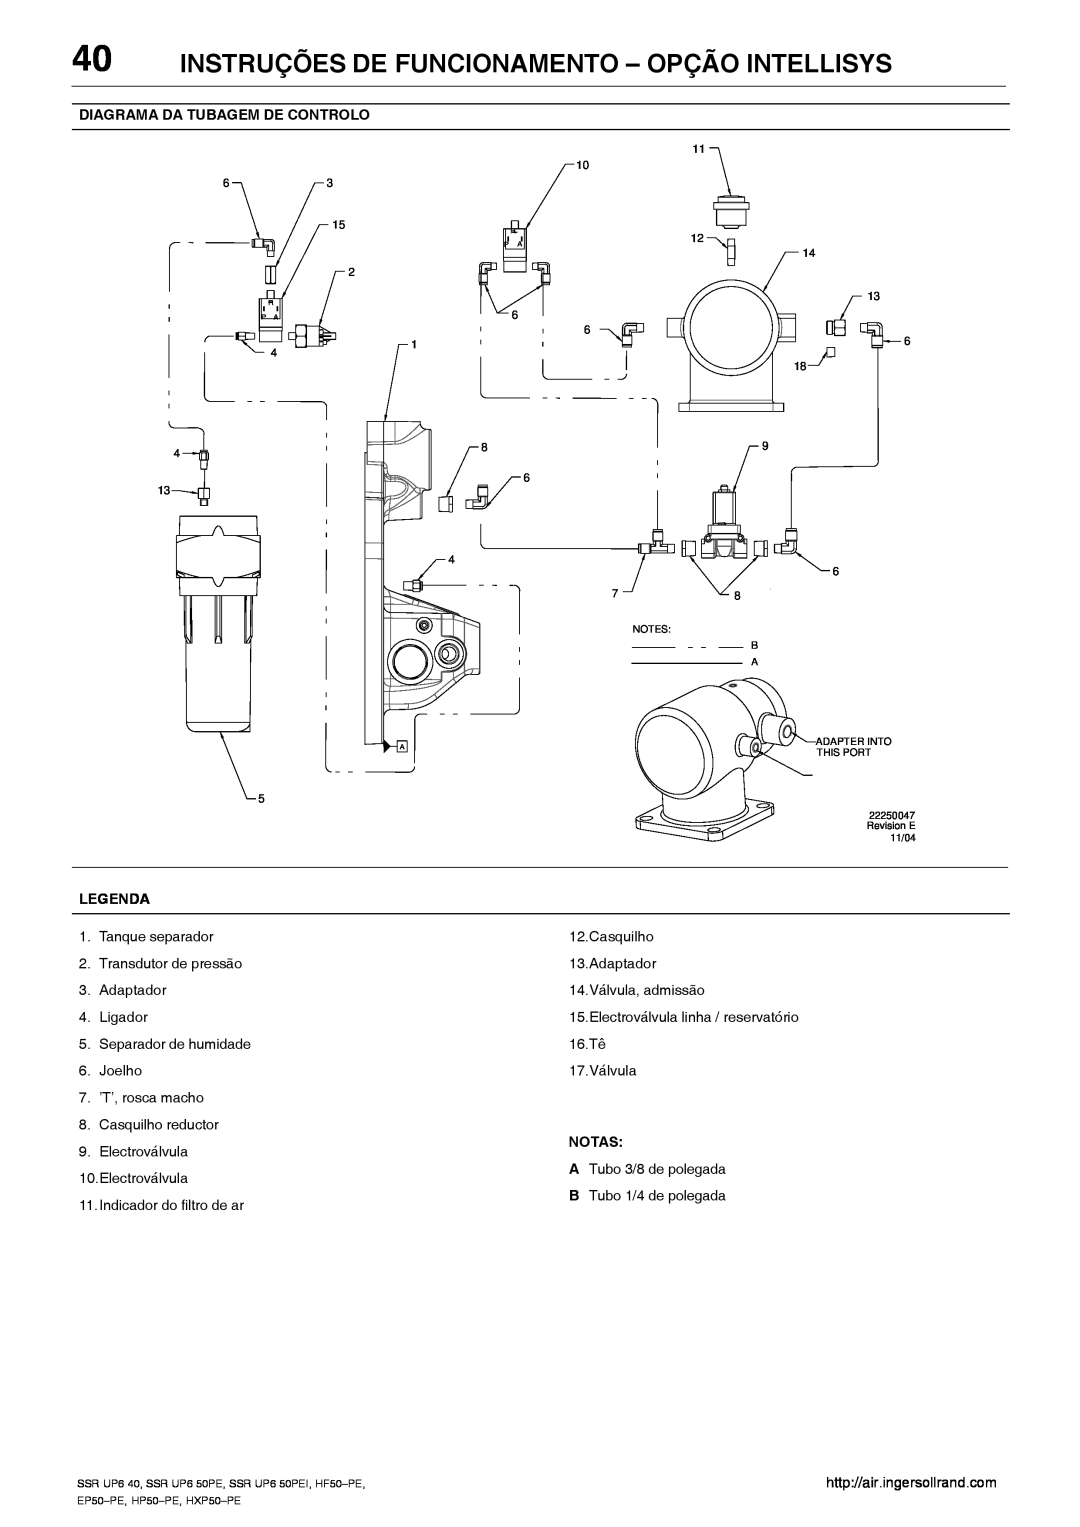 Ingersoll-Rand HXP50-PE, SSR UP6 40 Instruções De Funcionamento - Opção Intellisys, Electroválvula linha / reservatório 